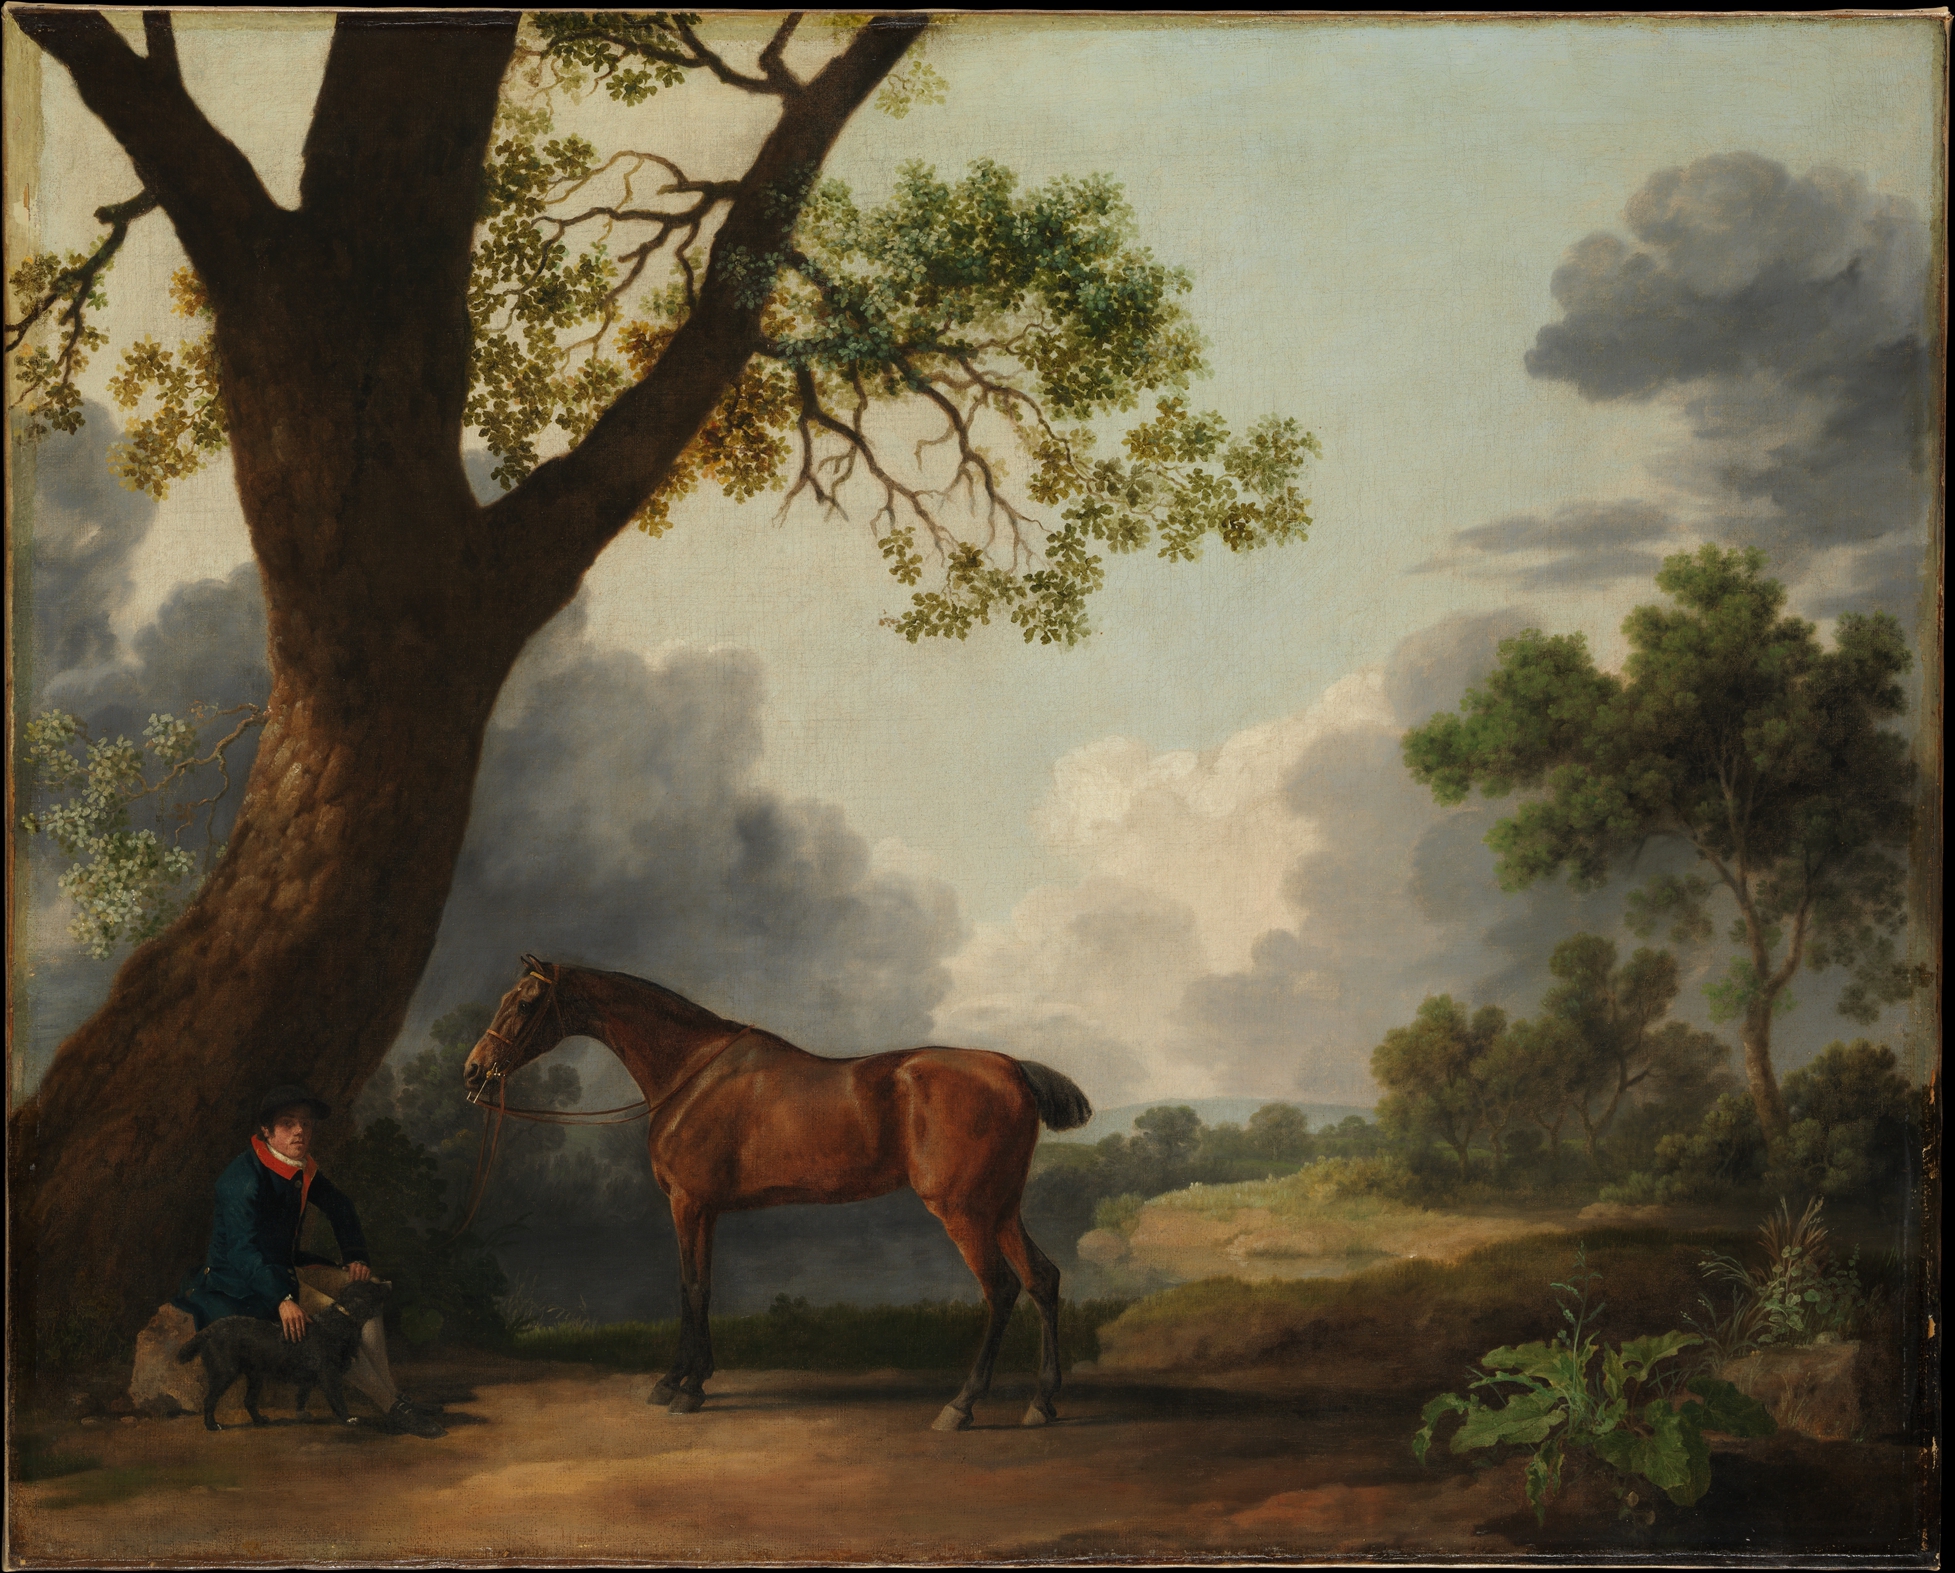 Das Jagdpferd des dritten Herzogs von Dorset mit einem Reitknecht und einem Hund by George Stubbs - 1768 - 101,6 x 126,4 cm Metropolitan Museum of Art